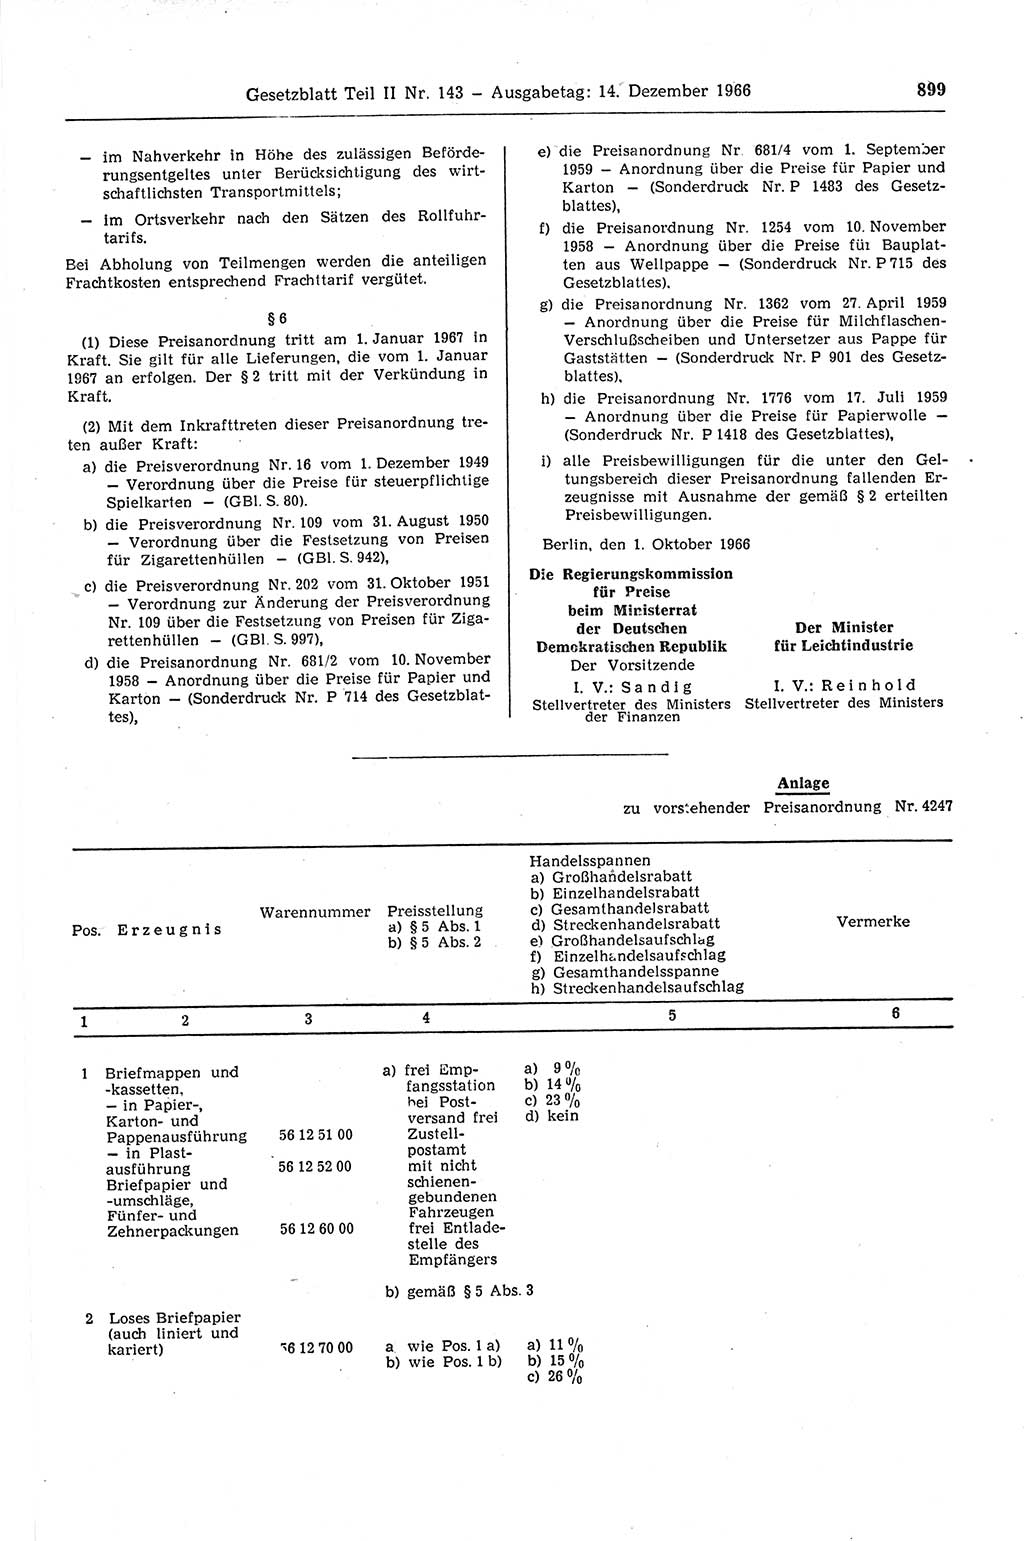 Gesetzblatt (GBl.) der Deutschen Demokratischen Republik (DDR) Teil ⅠⅠ 1966, Seite 899 (GBl. DDR ⅠⅠ 1966, S. 899)